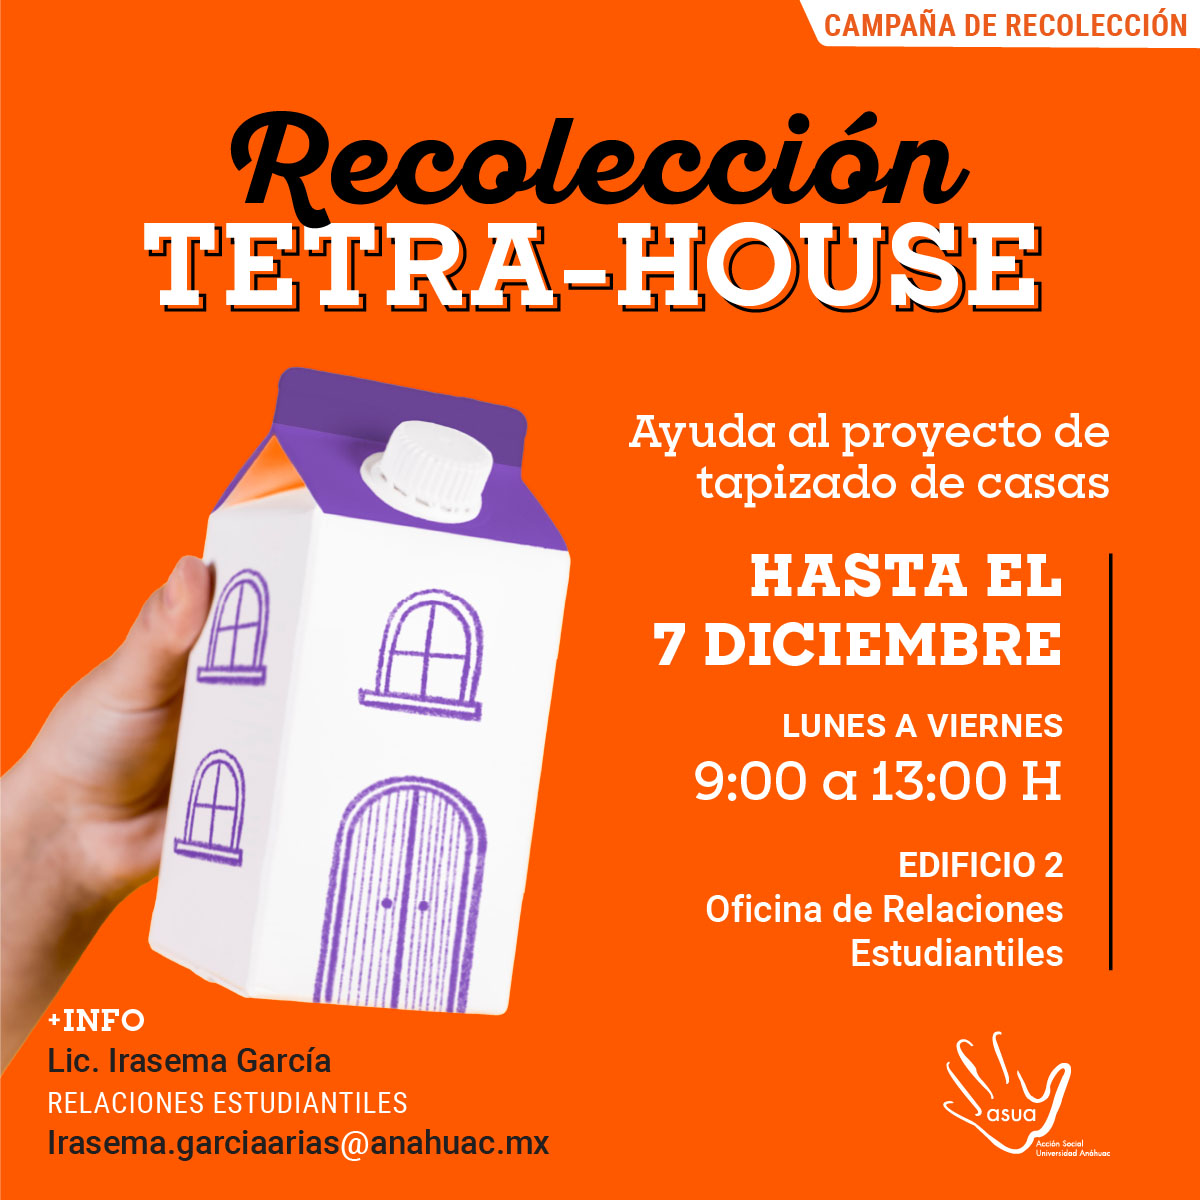 Recolección Tetra-House